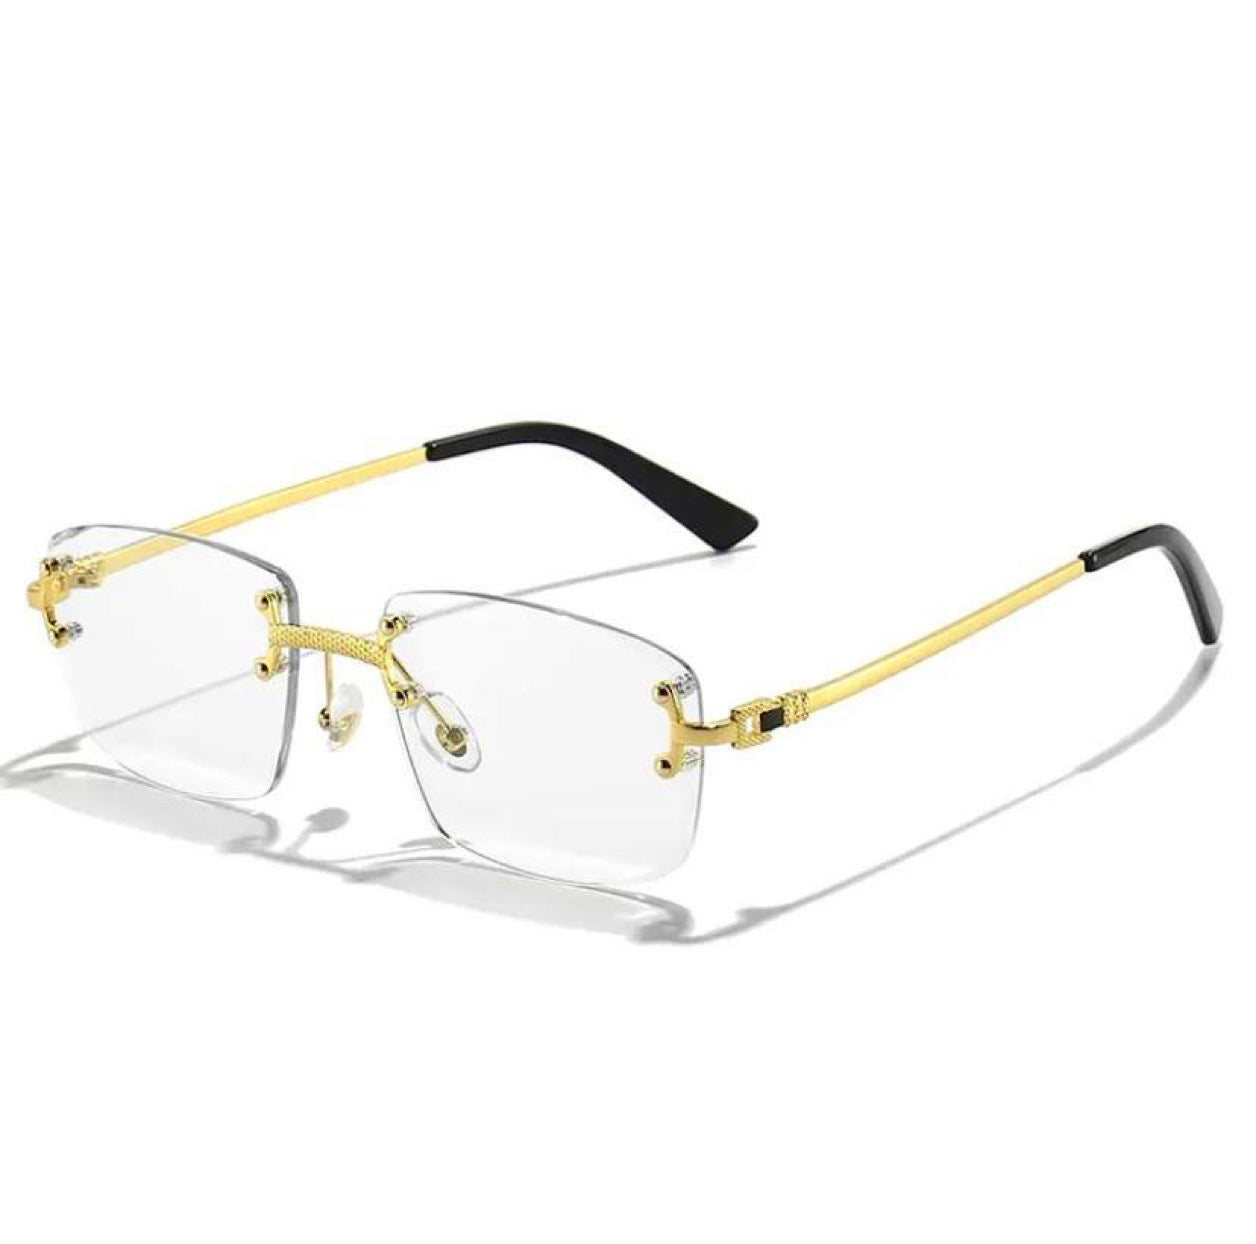 Rimless lens glasses